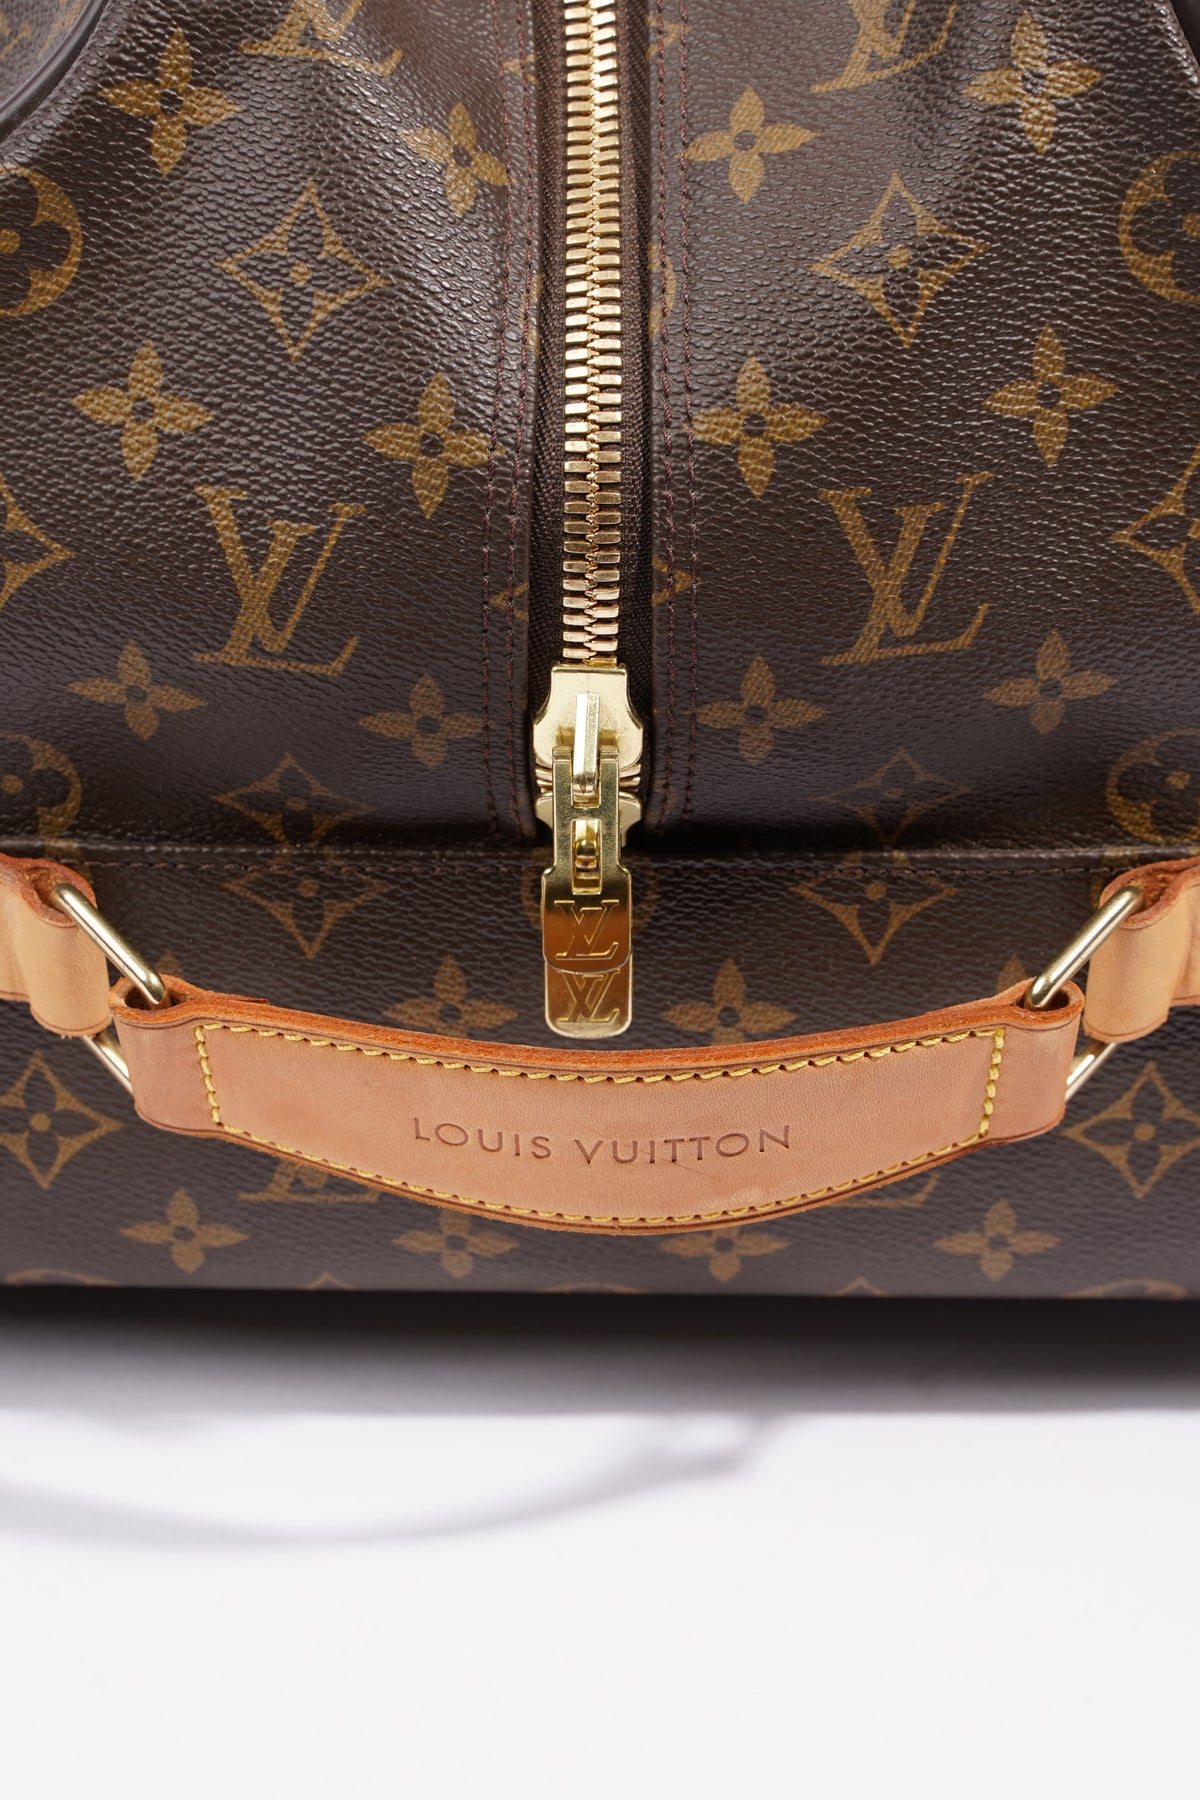 Louis Vuitton Eole Travel bag 357472